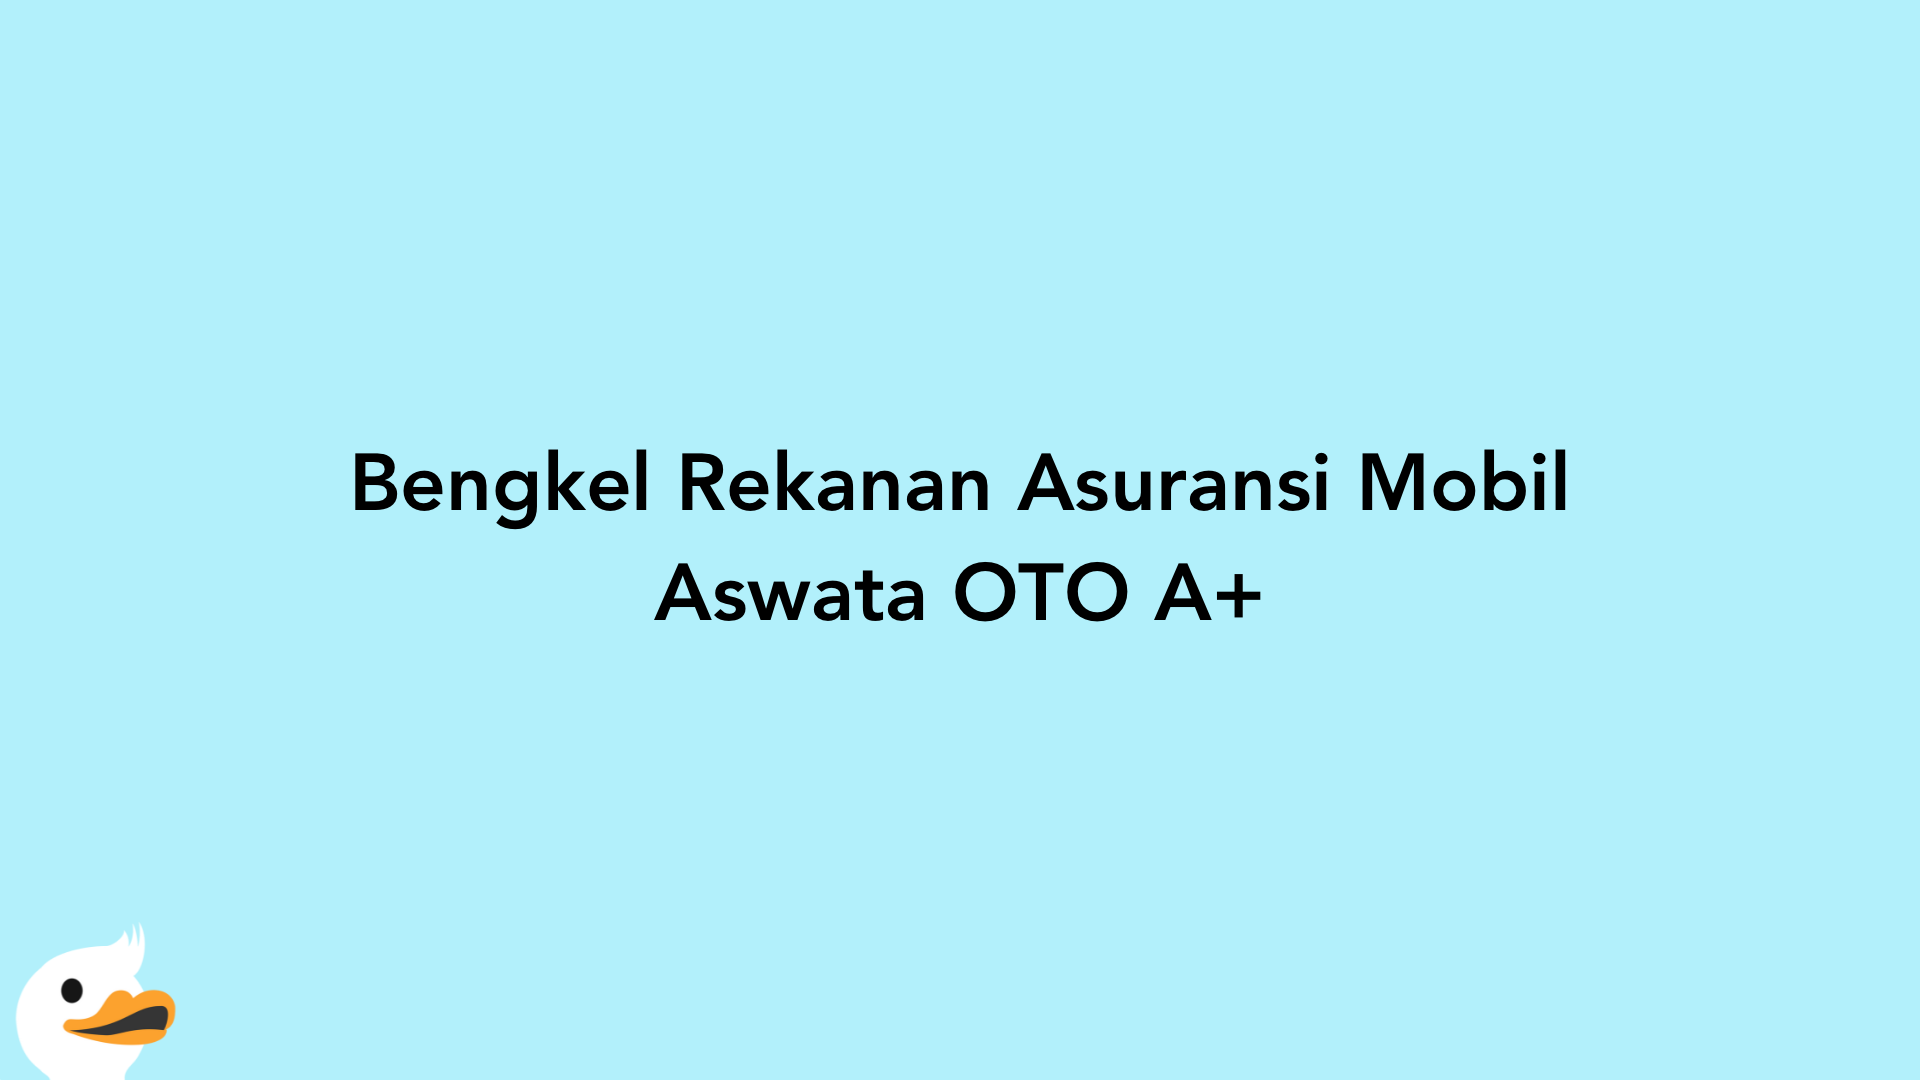 Bengkel Rekanan Asuransi Mobil Aswata OTO A+